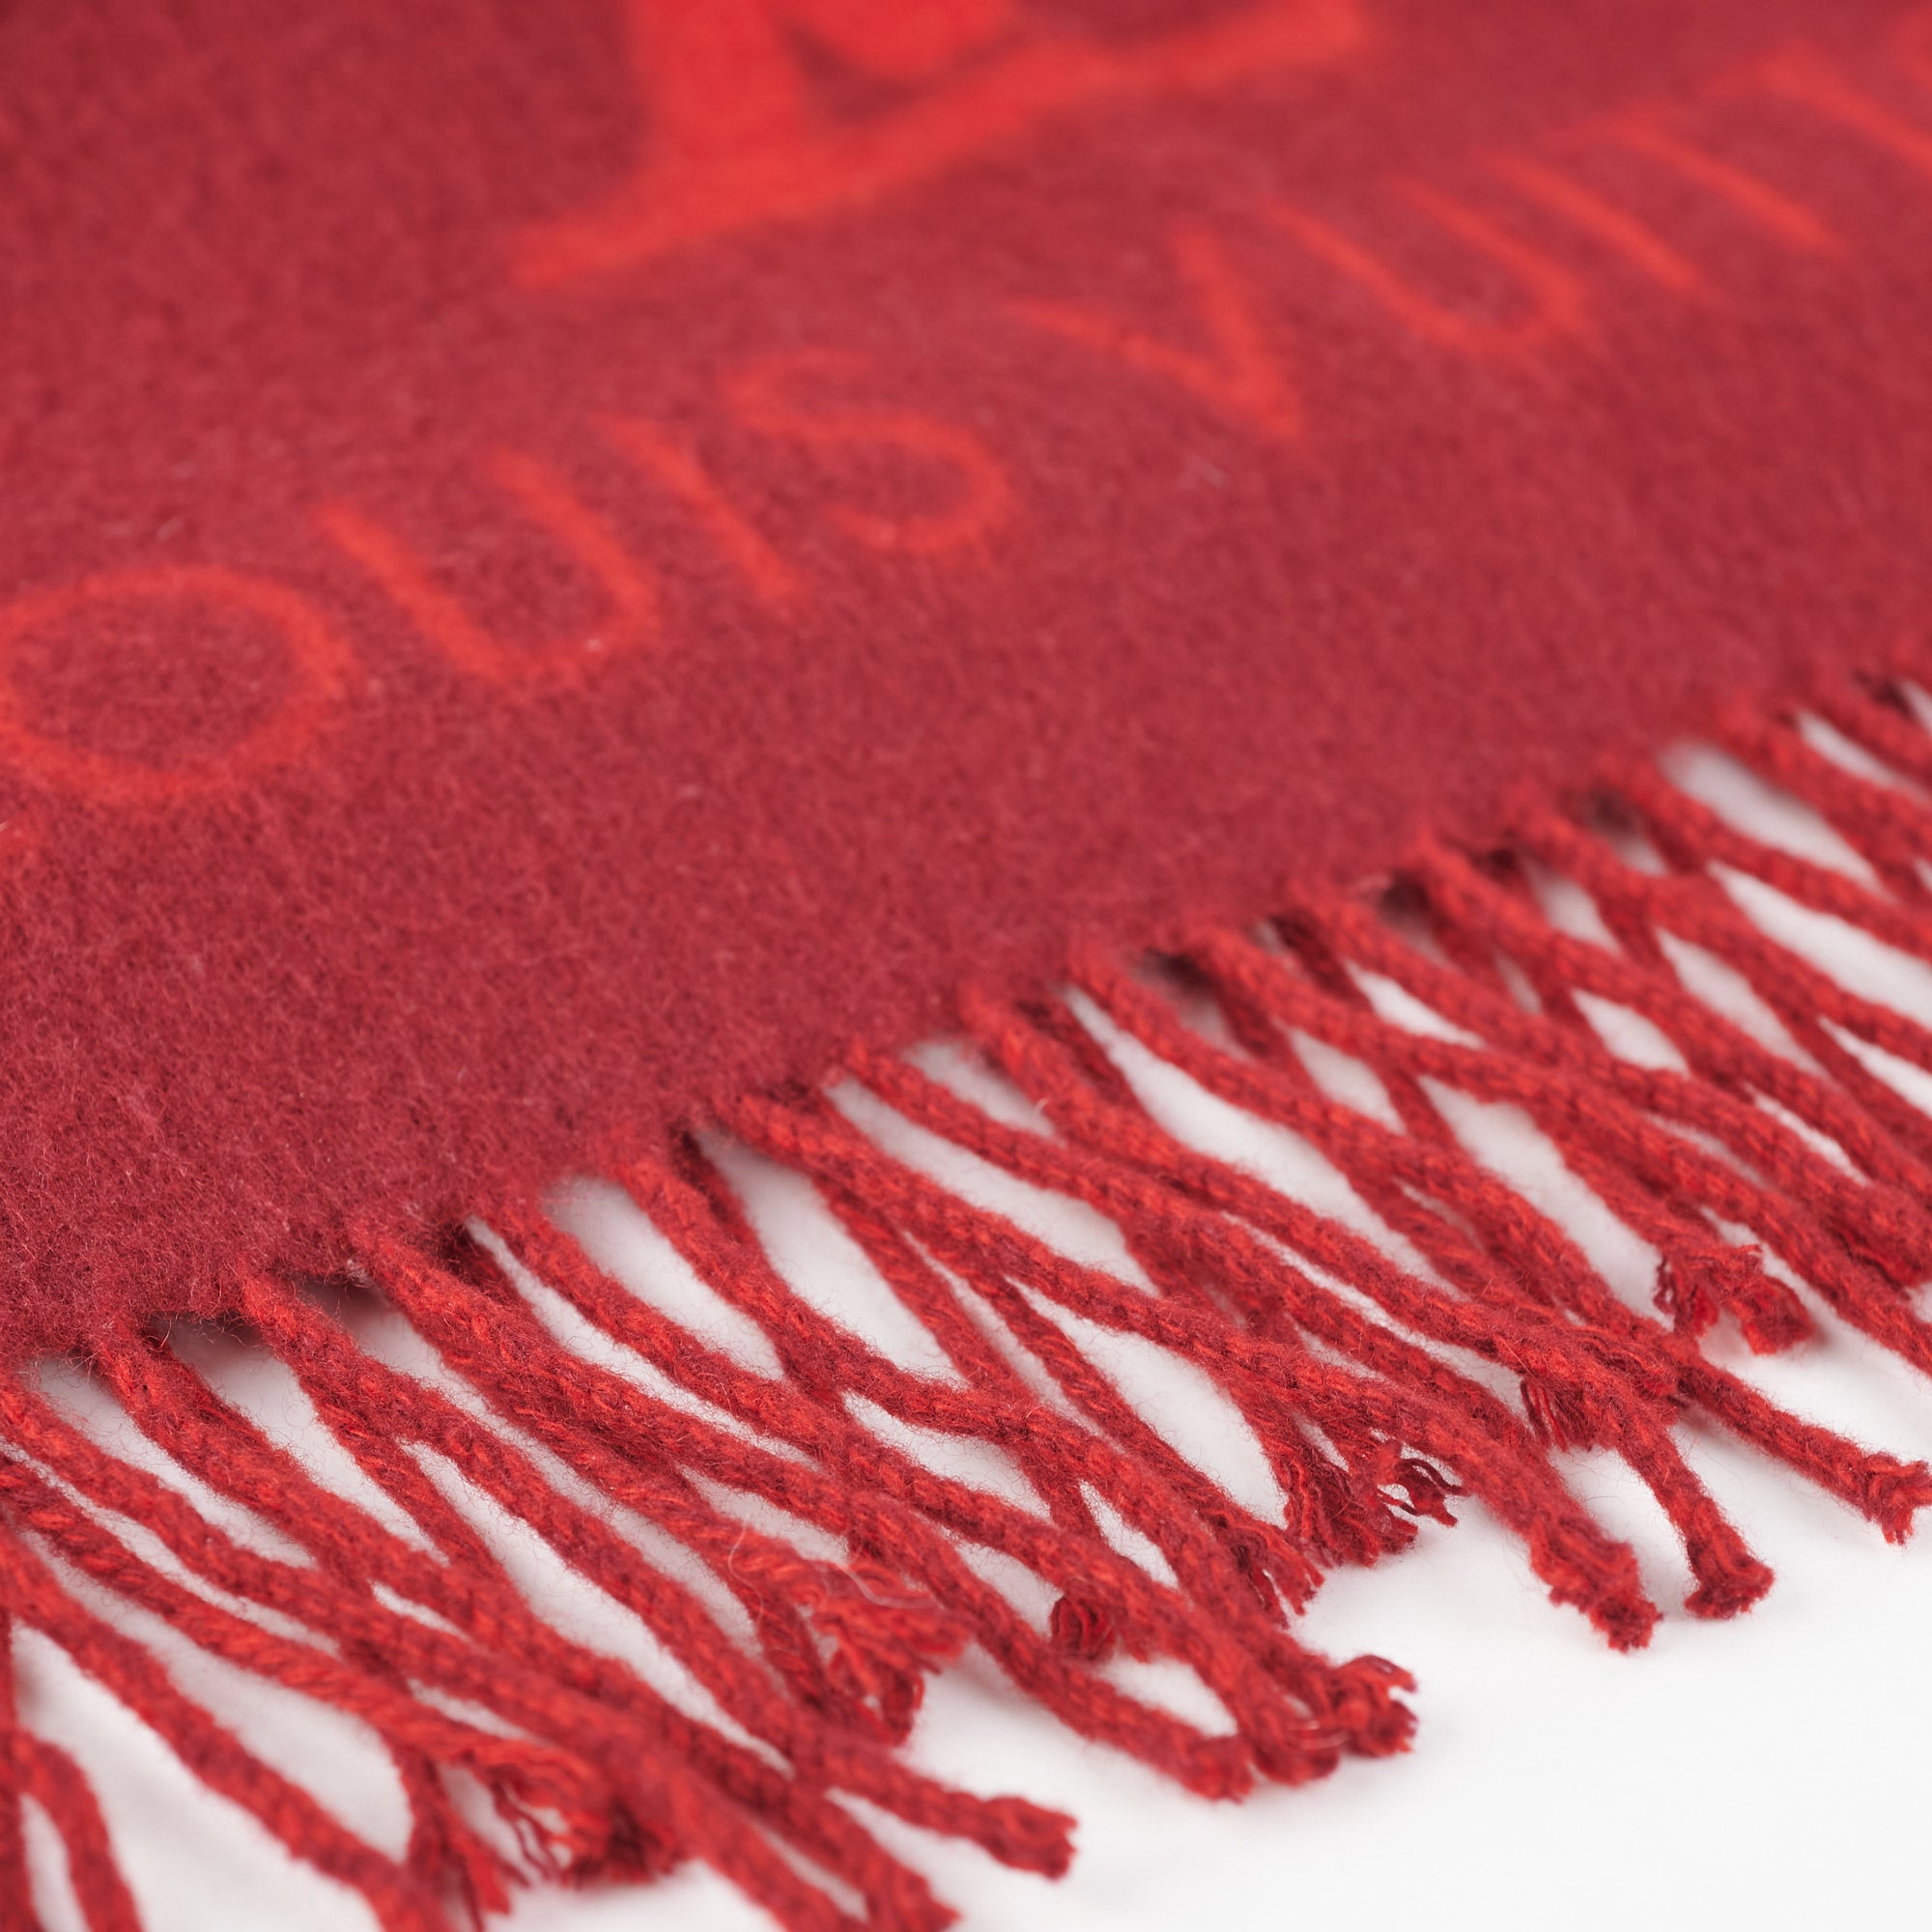 Reykjavik cashmere scarf Louis Vuitton Grey in Cashmere - 30250225